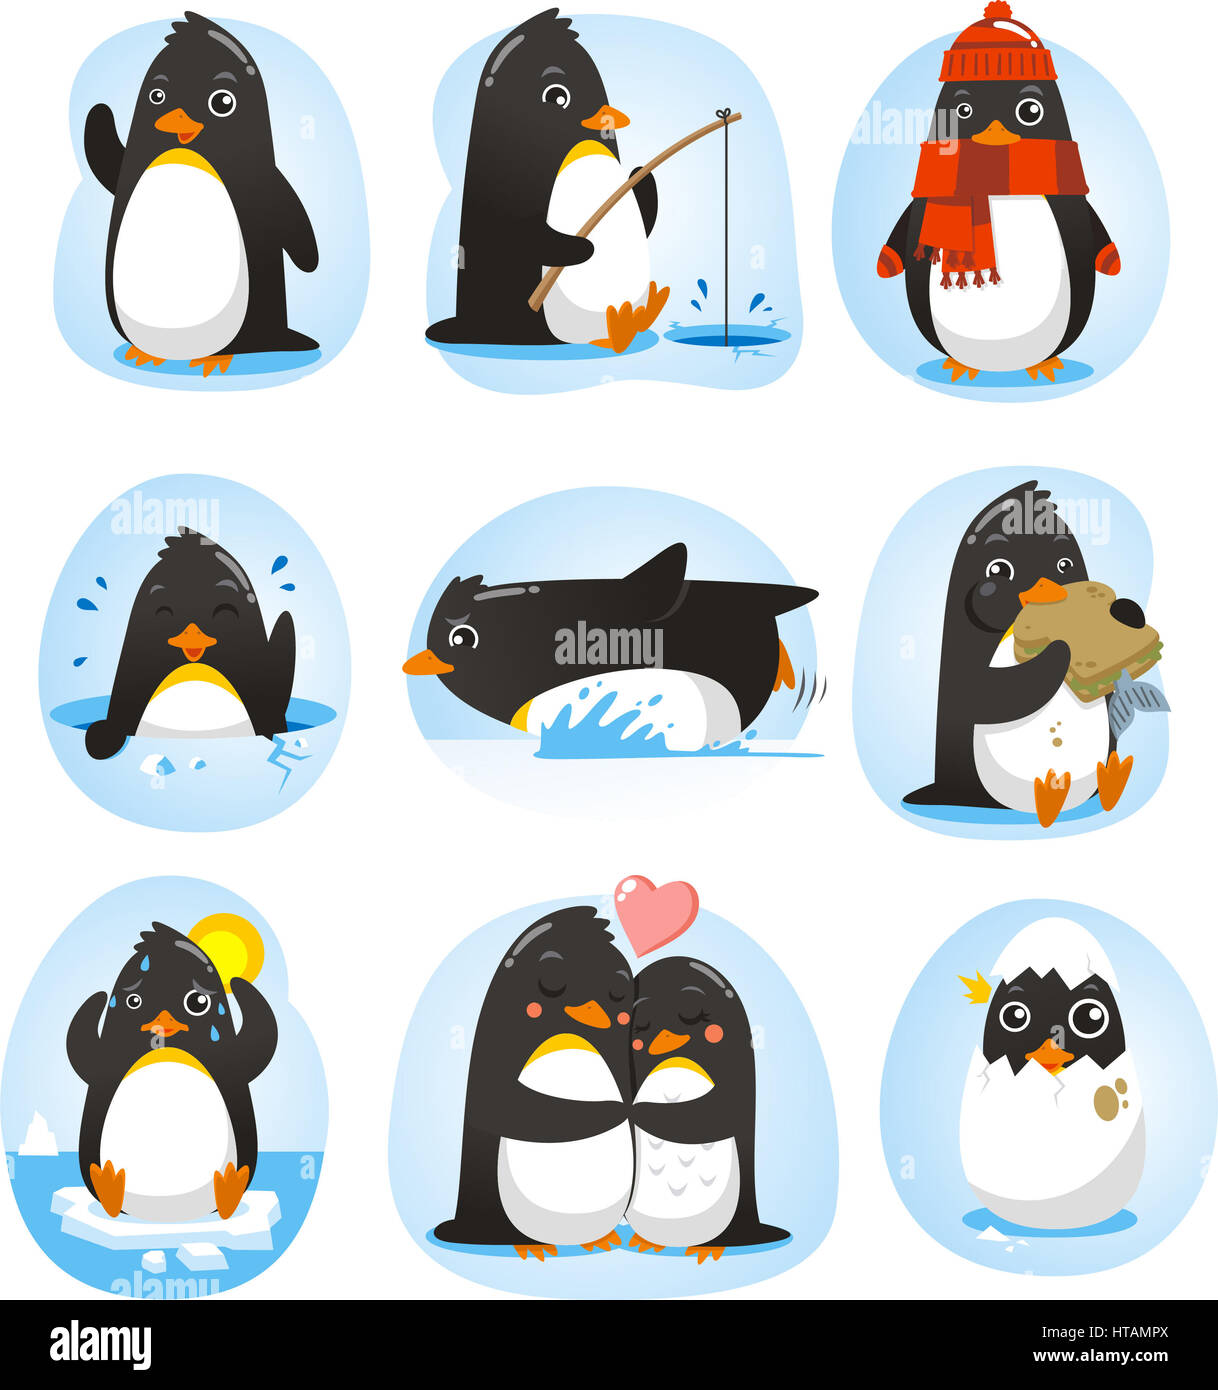 Pinguin set Vektor-Illustration mit den Pinguinen in verschiedenen Situationen wie tanzen, Angeln, Winter, Schwimmen, Essen, in Love Kollektion. Stockfoto